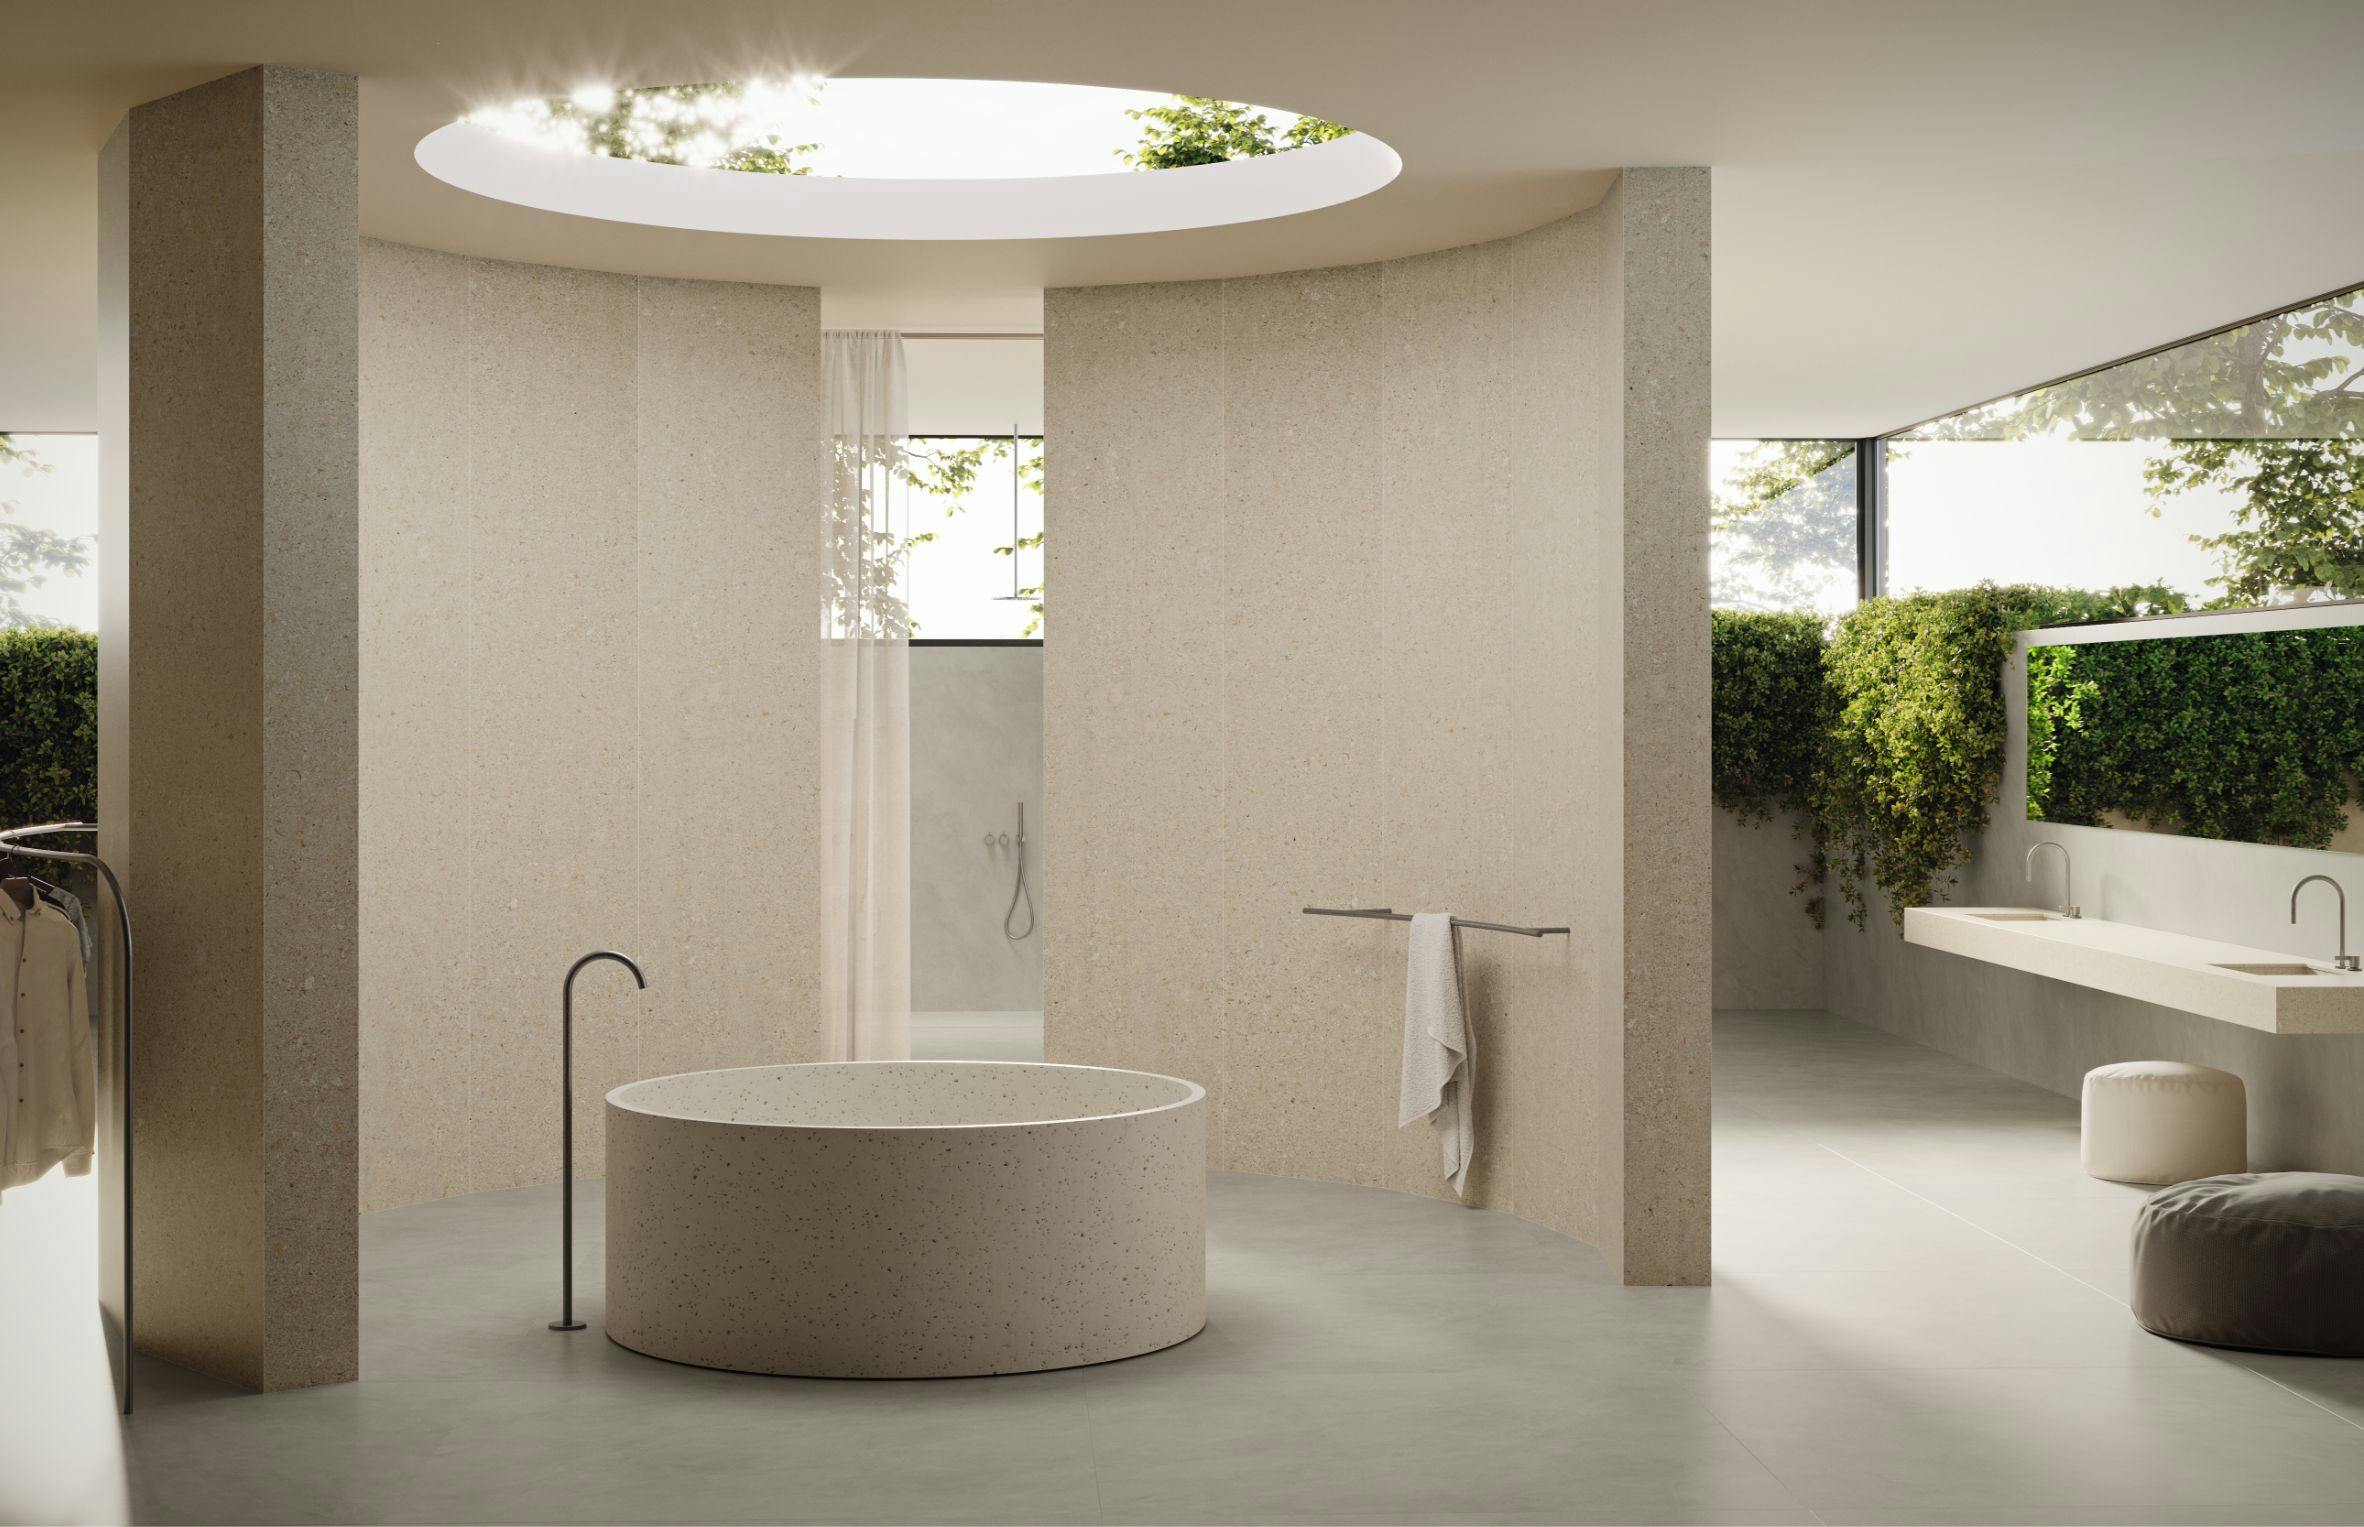 Bildnummer 37 des aktuellen Abschnitts von The Palazzo: the bathroom designed by Remy Meijers in which the shower takes centre stage von Cosentino Deutschland